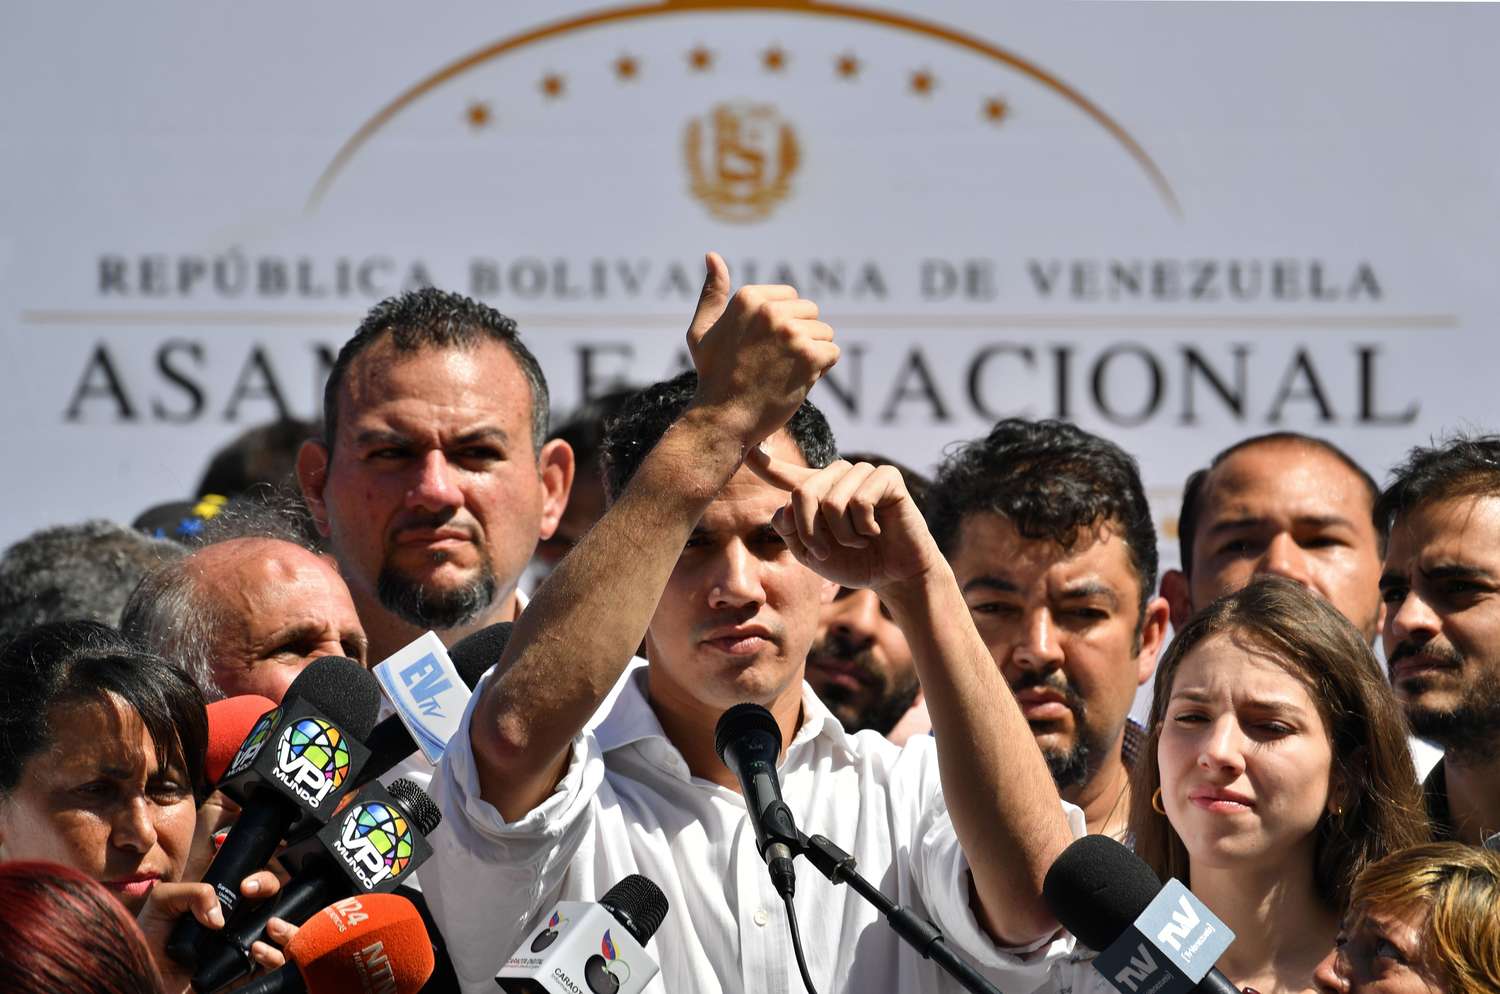 Demoraron al opositor venezolano Guaidó y el gobierno dijo que fue un hecho “irregular”